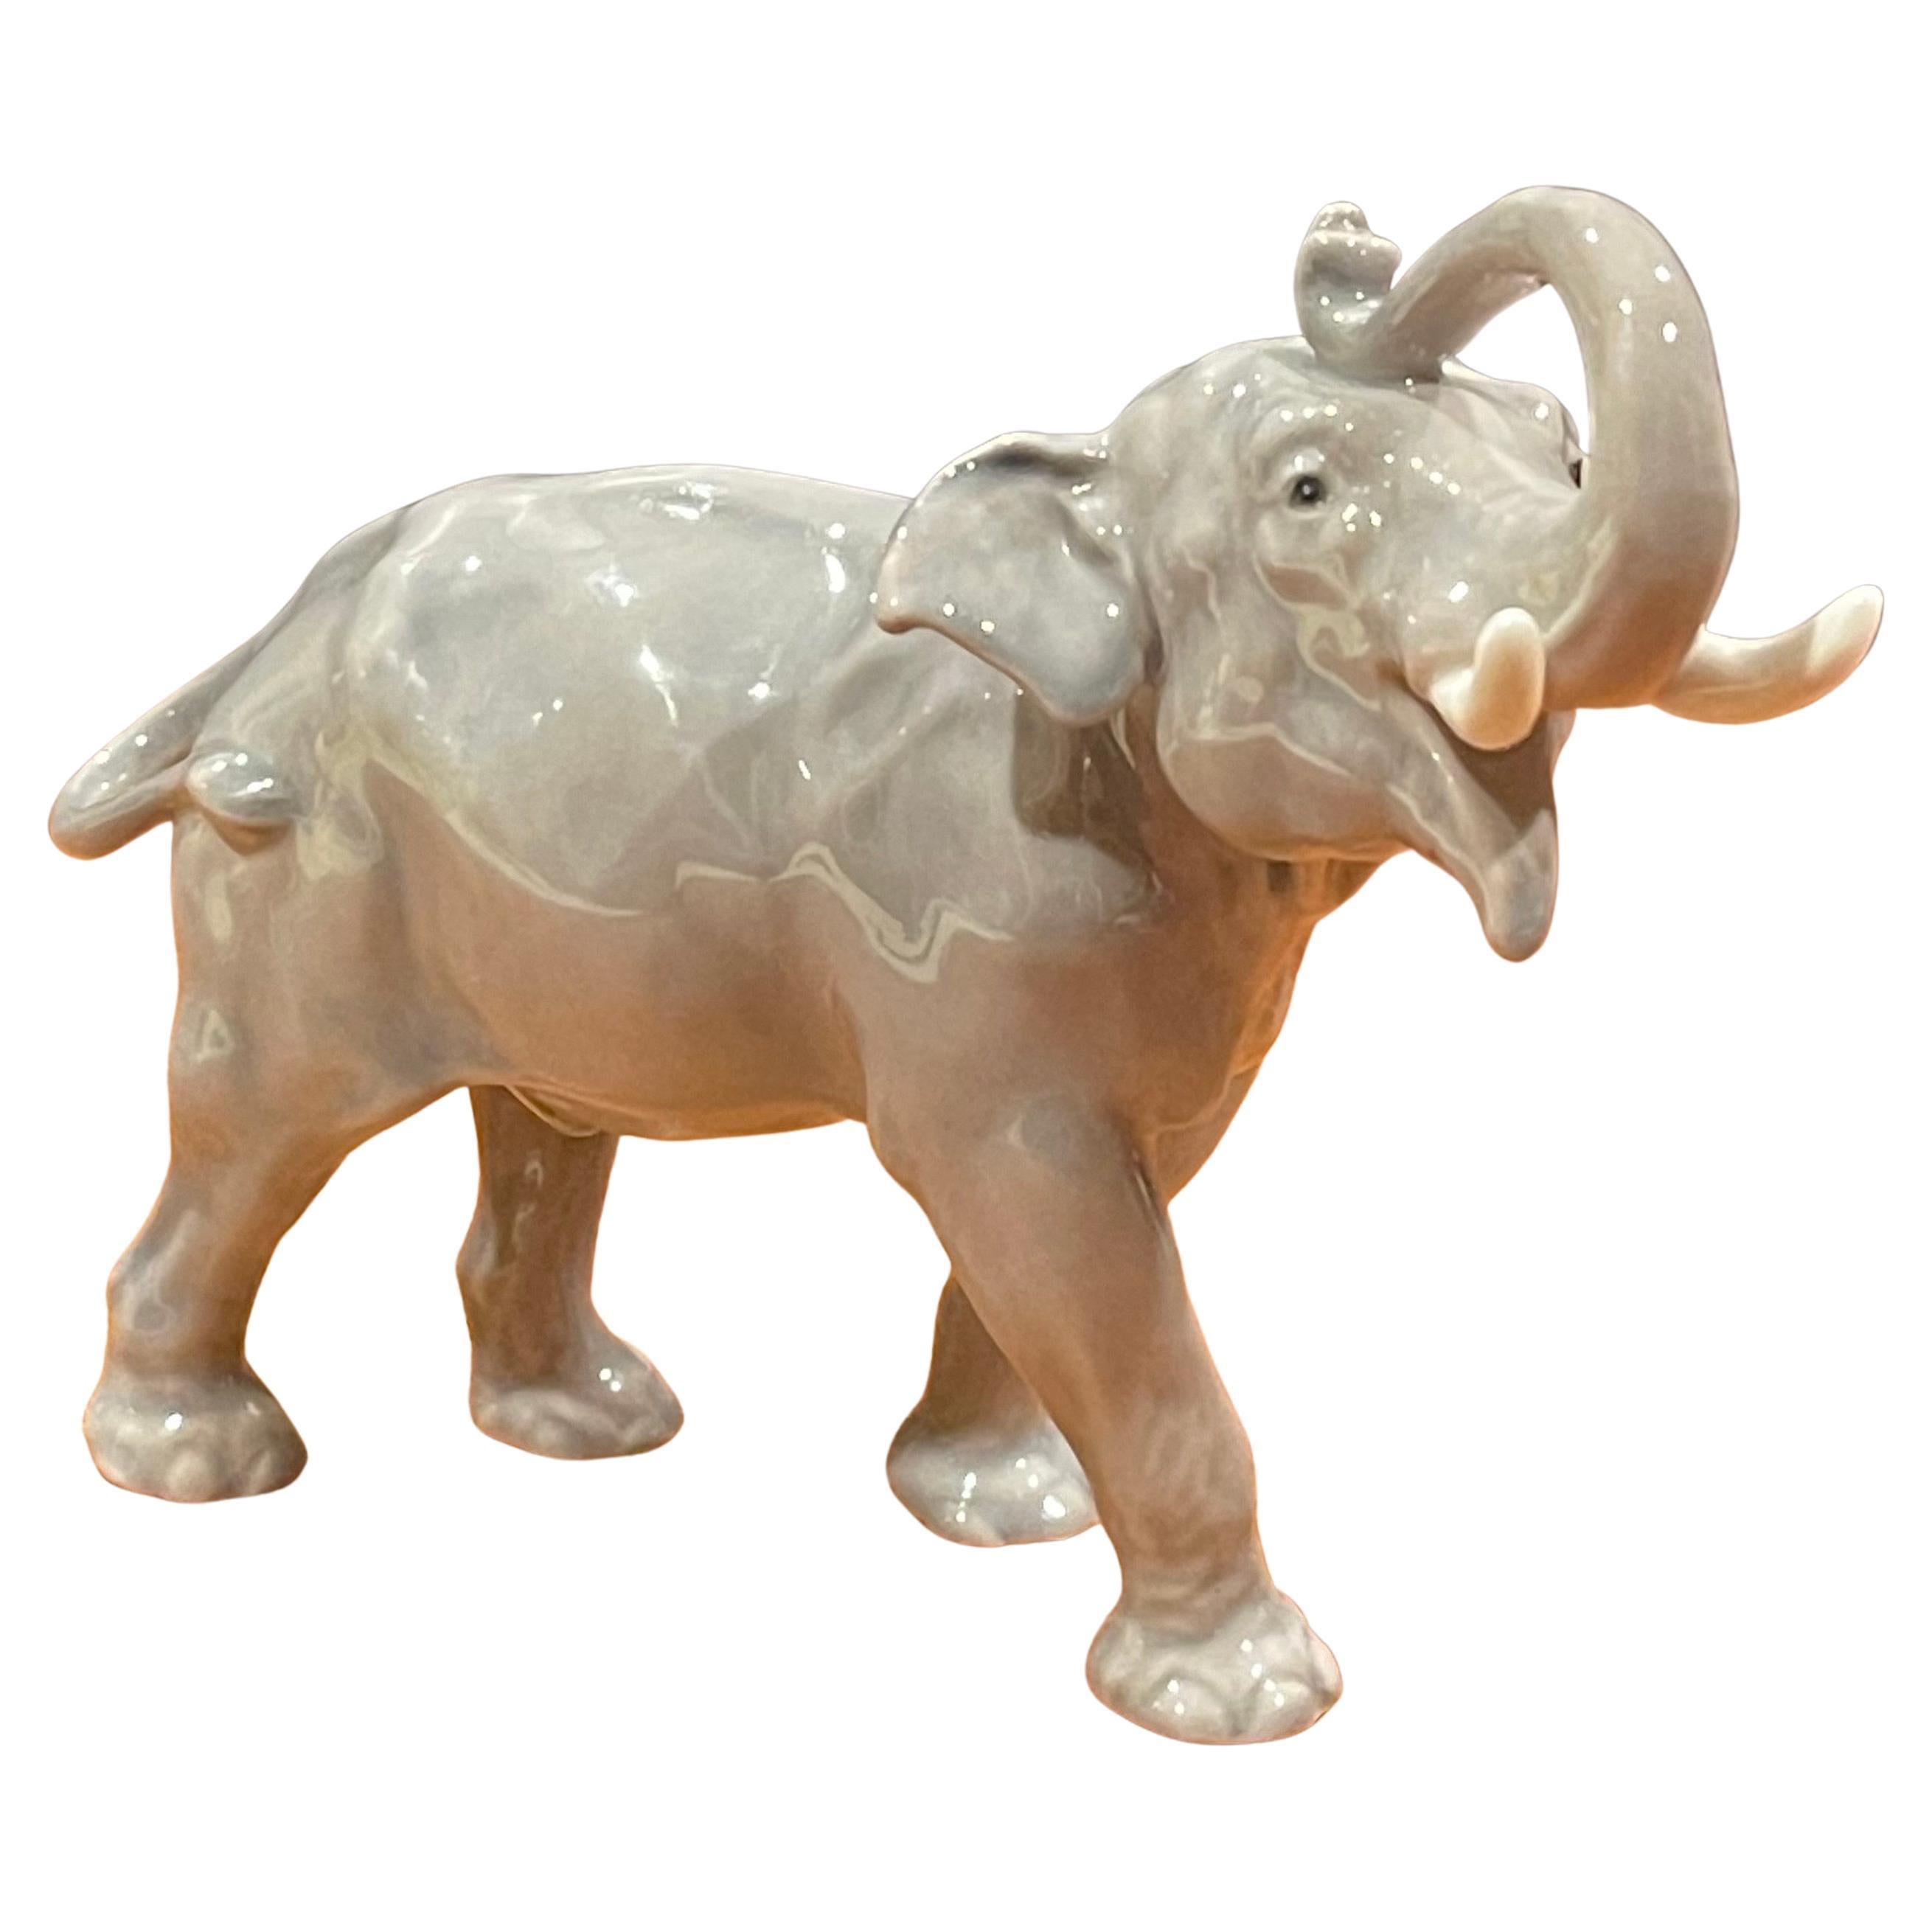 Handbemalte Elefanten-Skulptur aus Porzellan von Bing & Grondahl